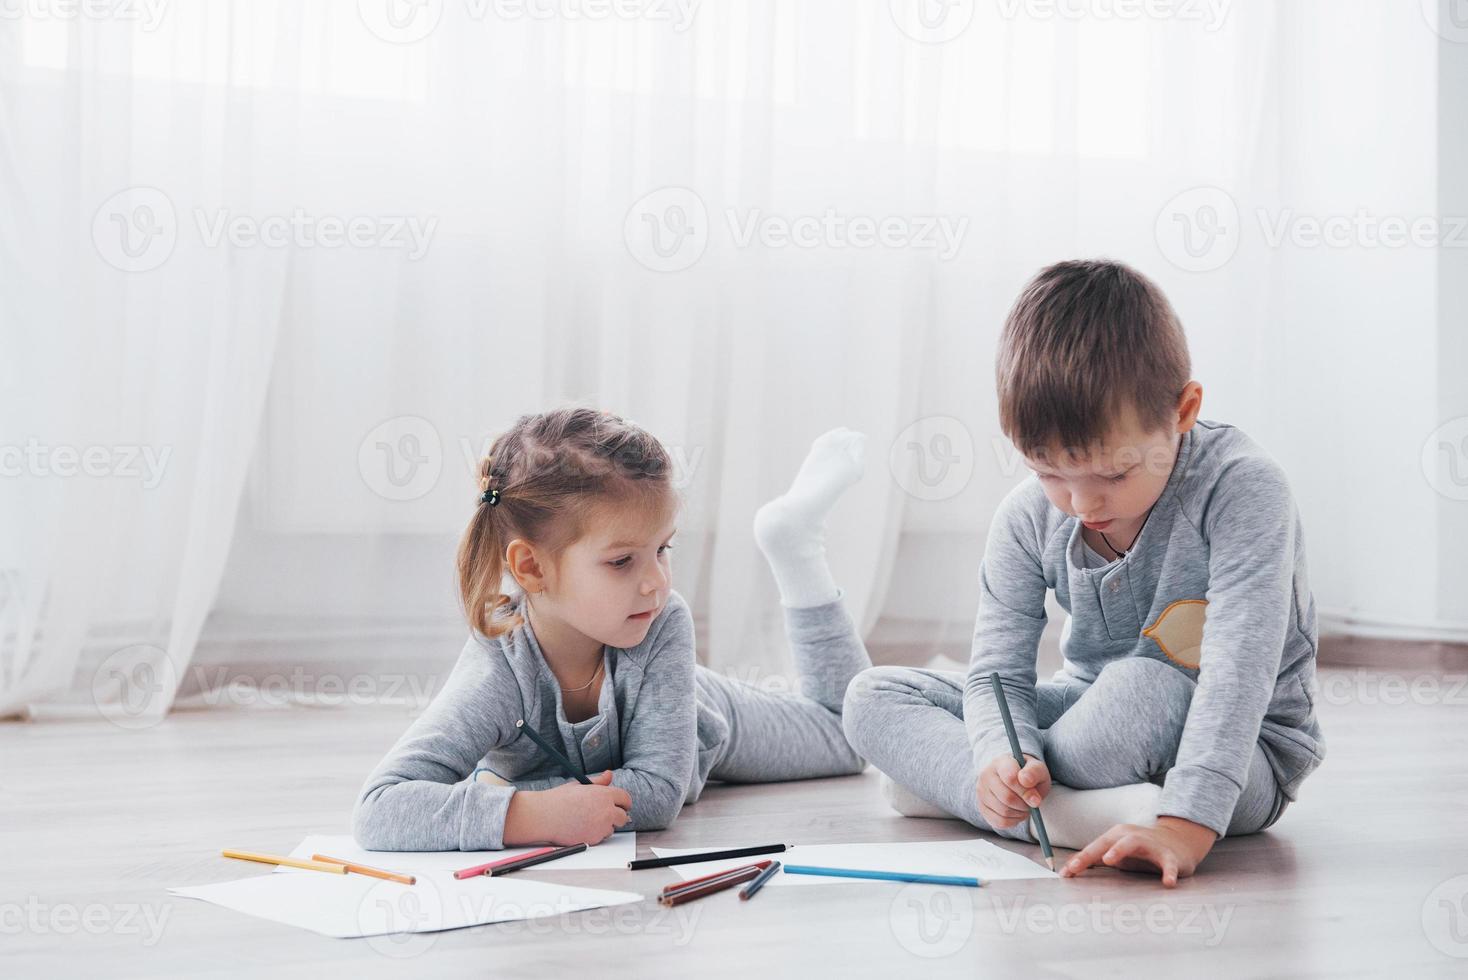 les enfants sont allongés par terre en pyjama et dessinent avec des crayons. peinture d'enfant mignon par des crayons photo